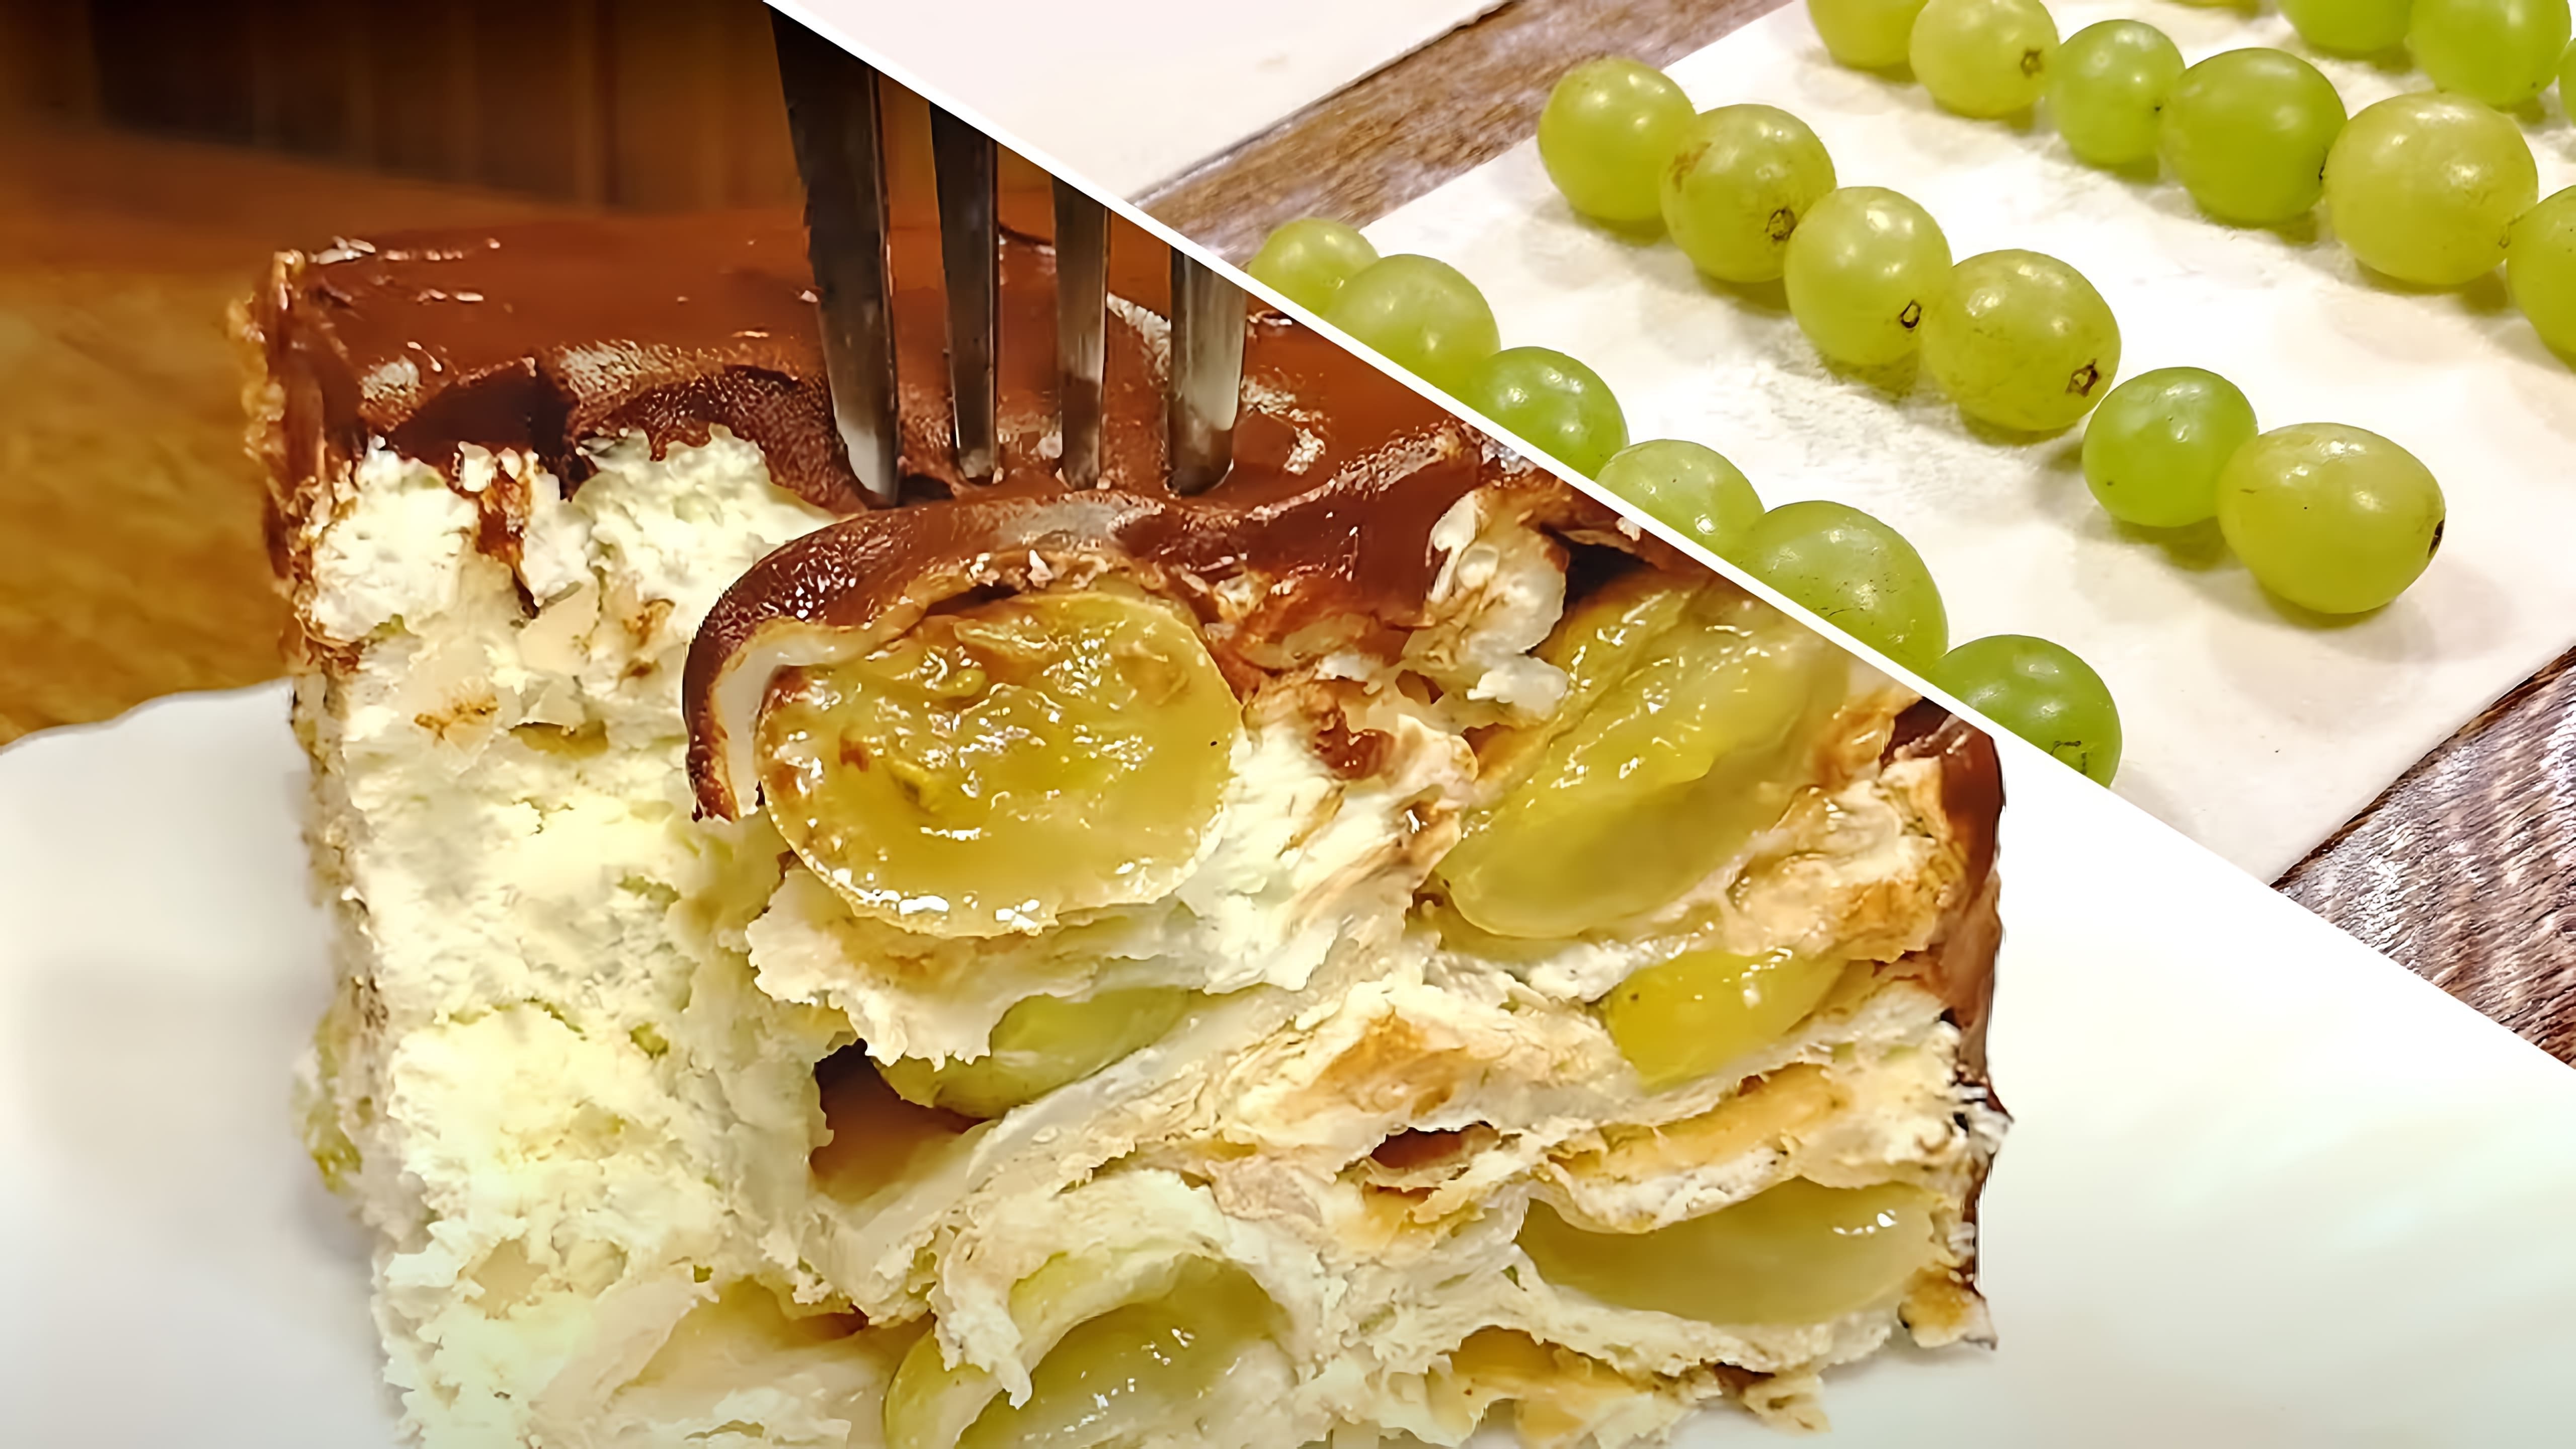 В этом видео демонстрируется процесс приготовления простого, но удивительного торта с виноградом